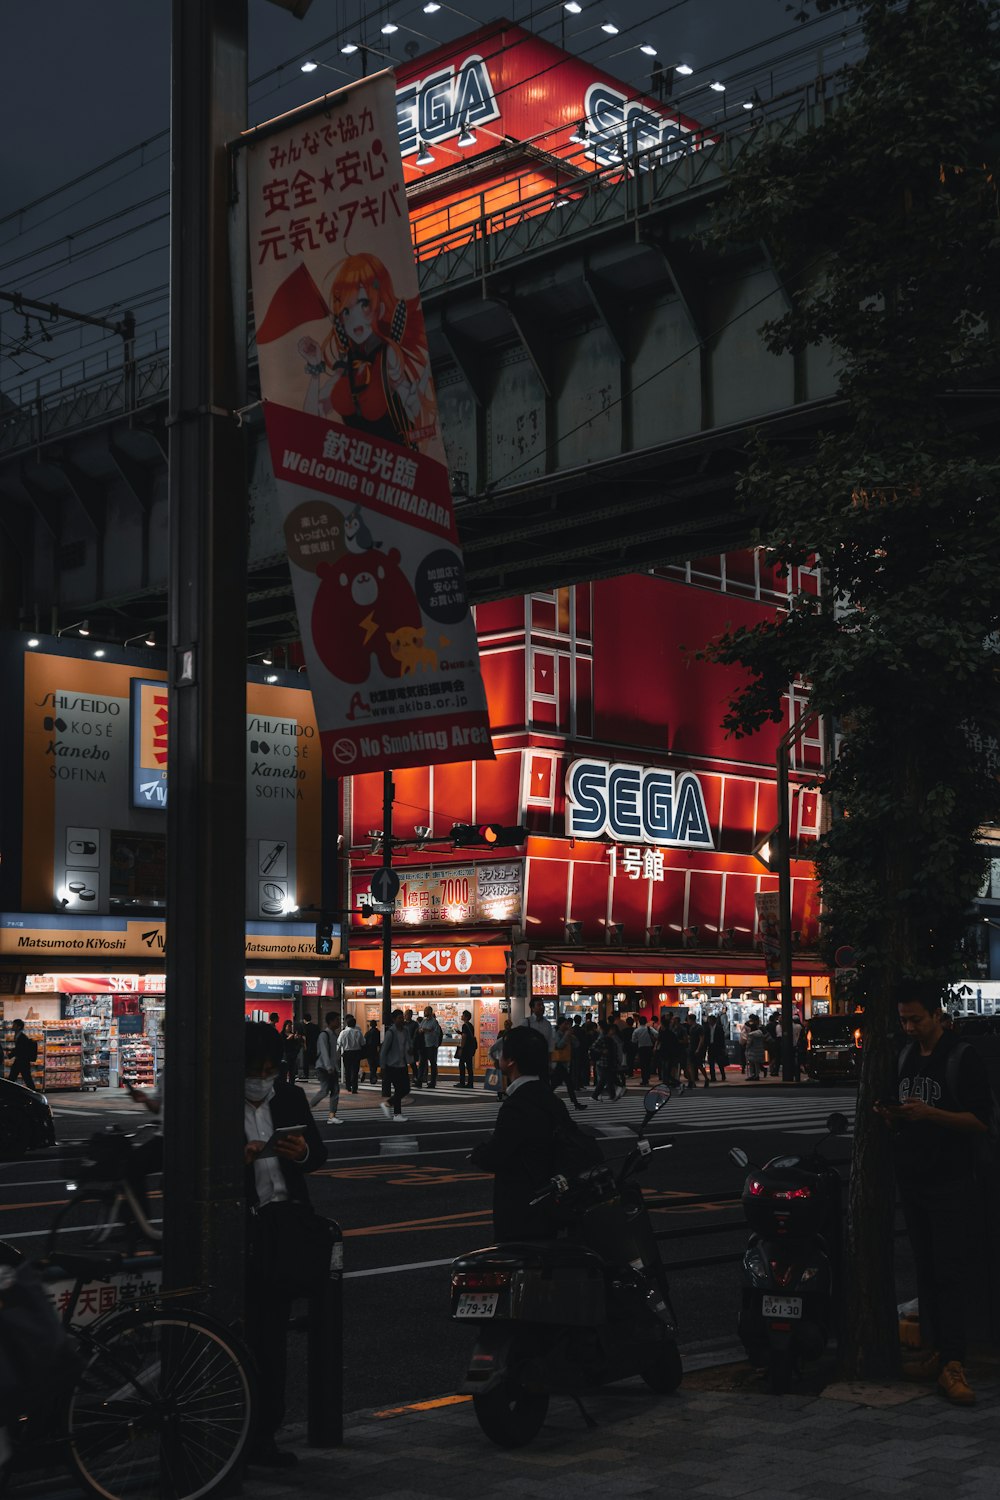 Sega building during night time